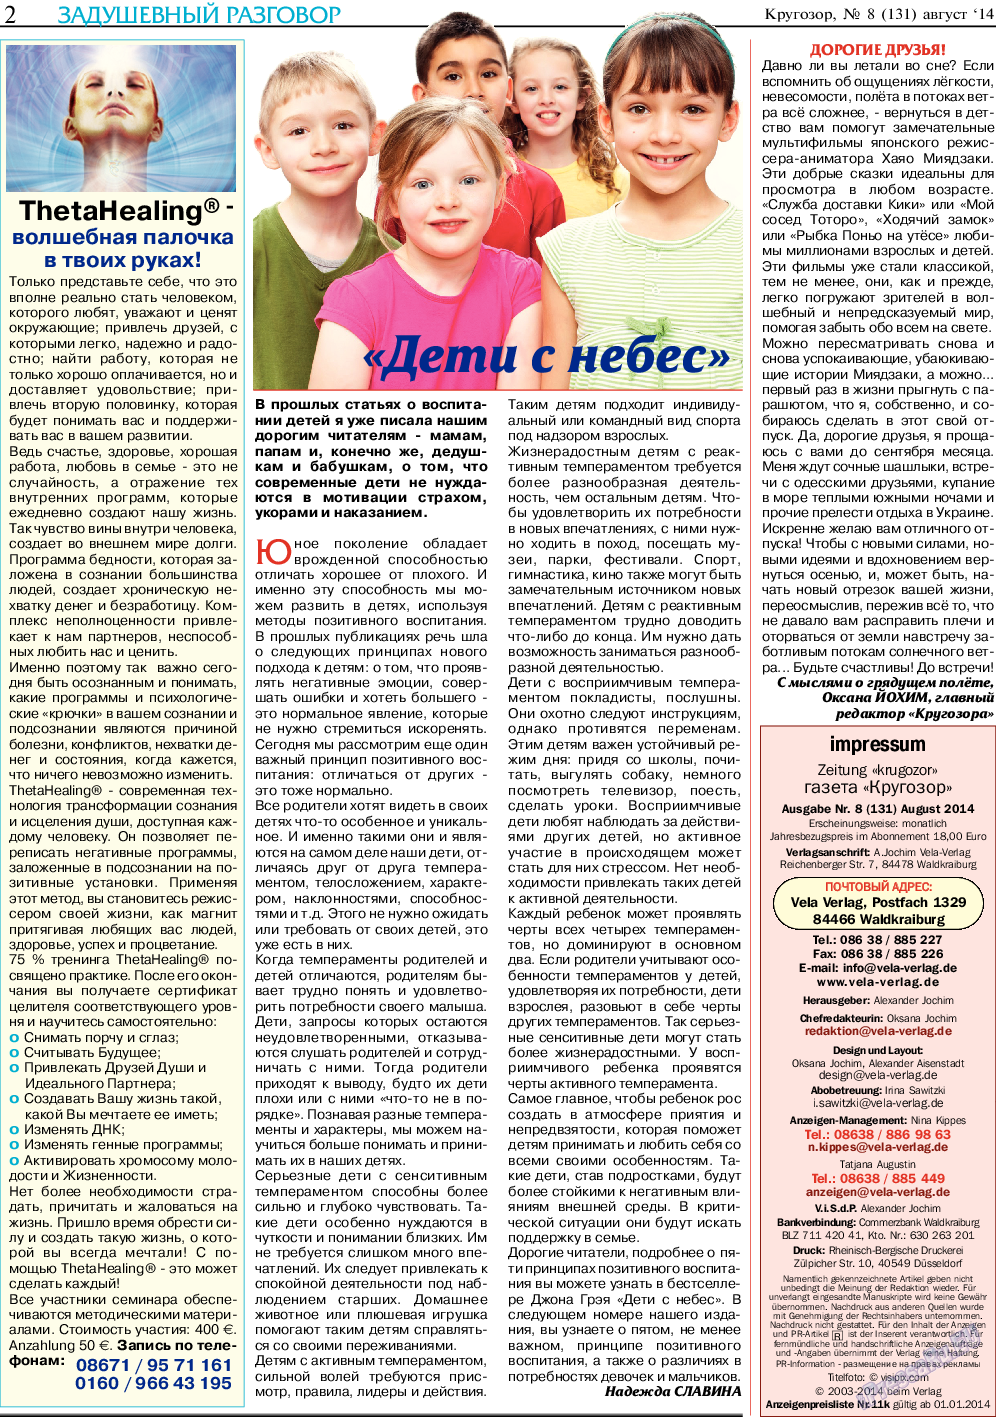 Кругозор (газета). 2014 год, номер 8, стр. 2